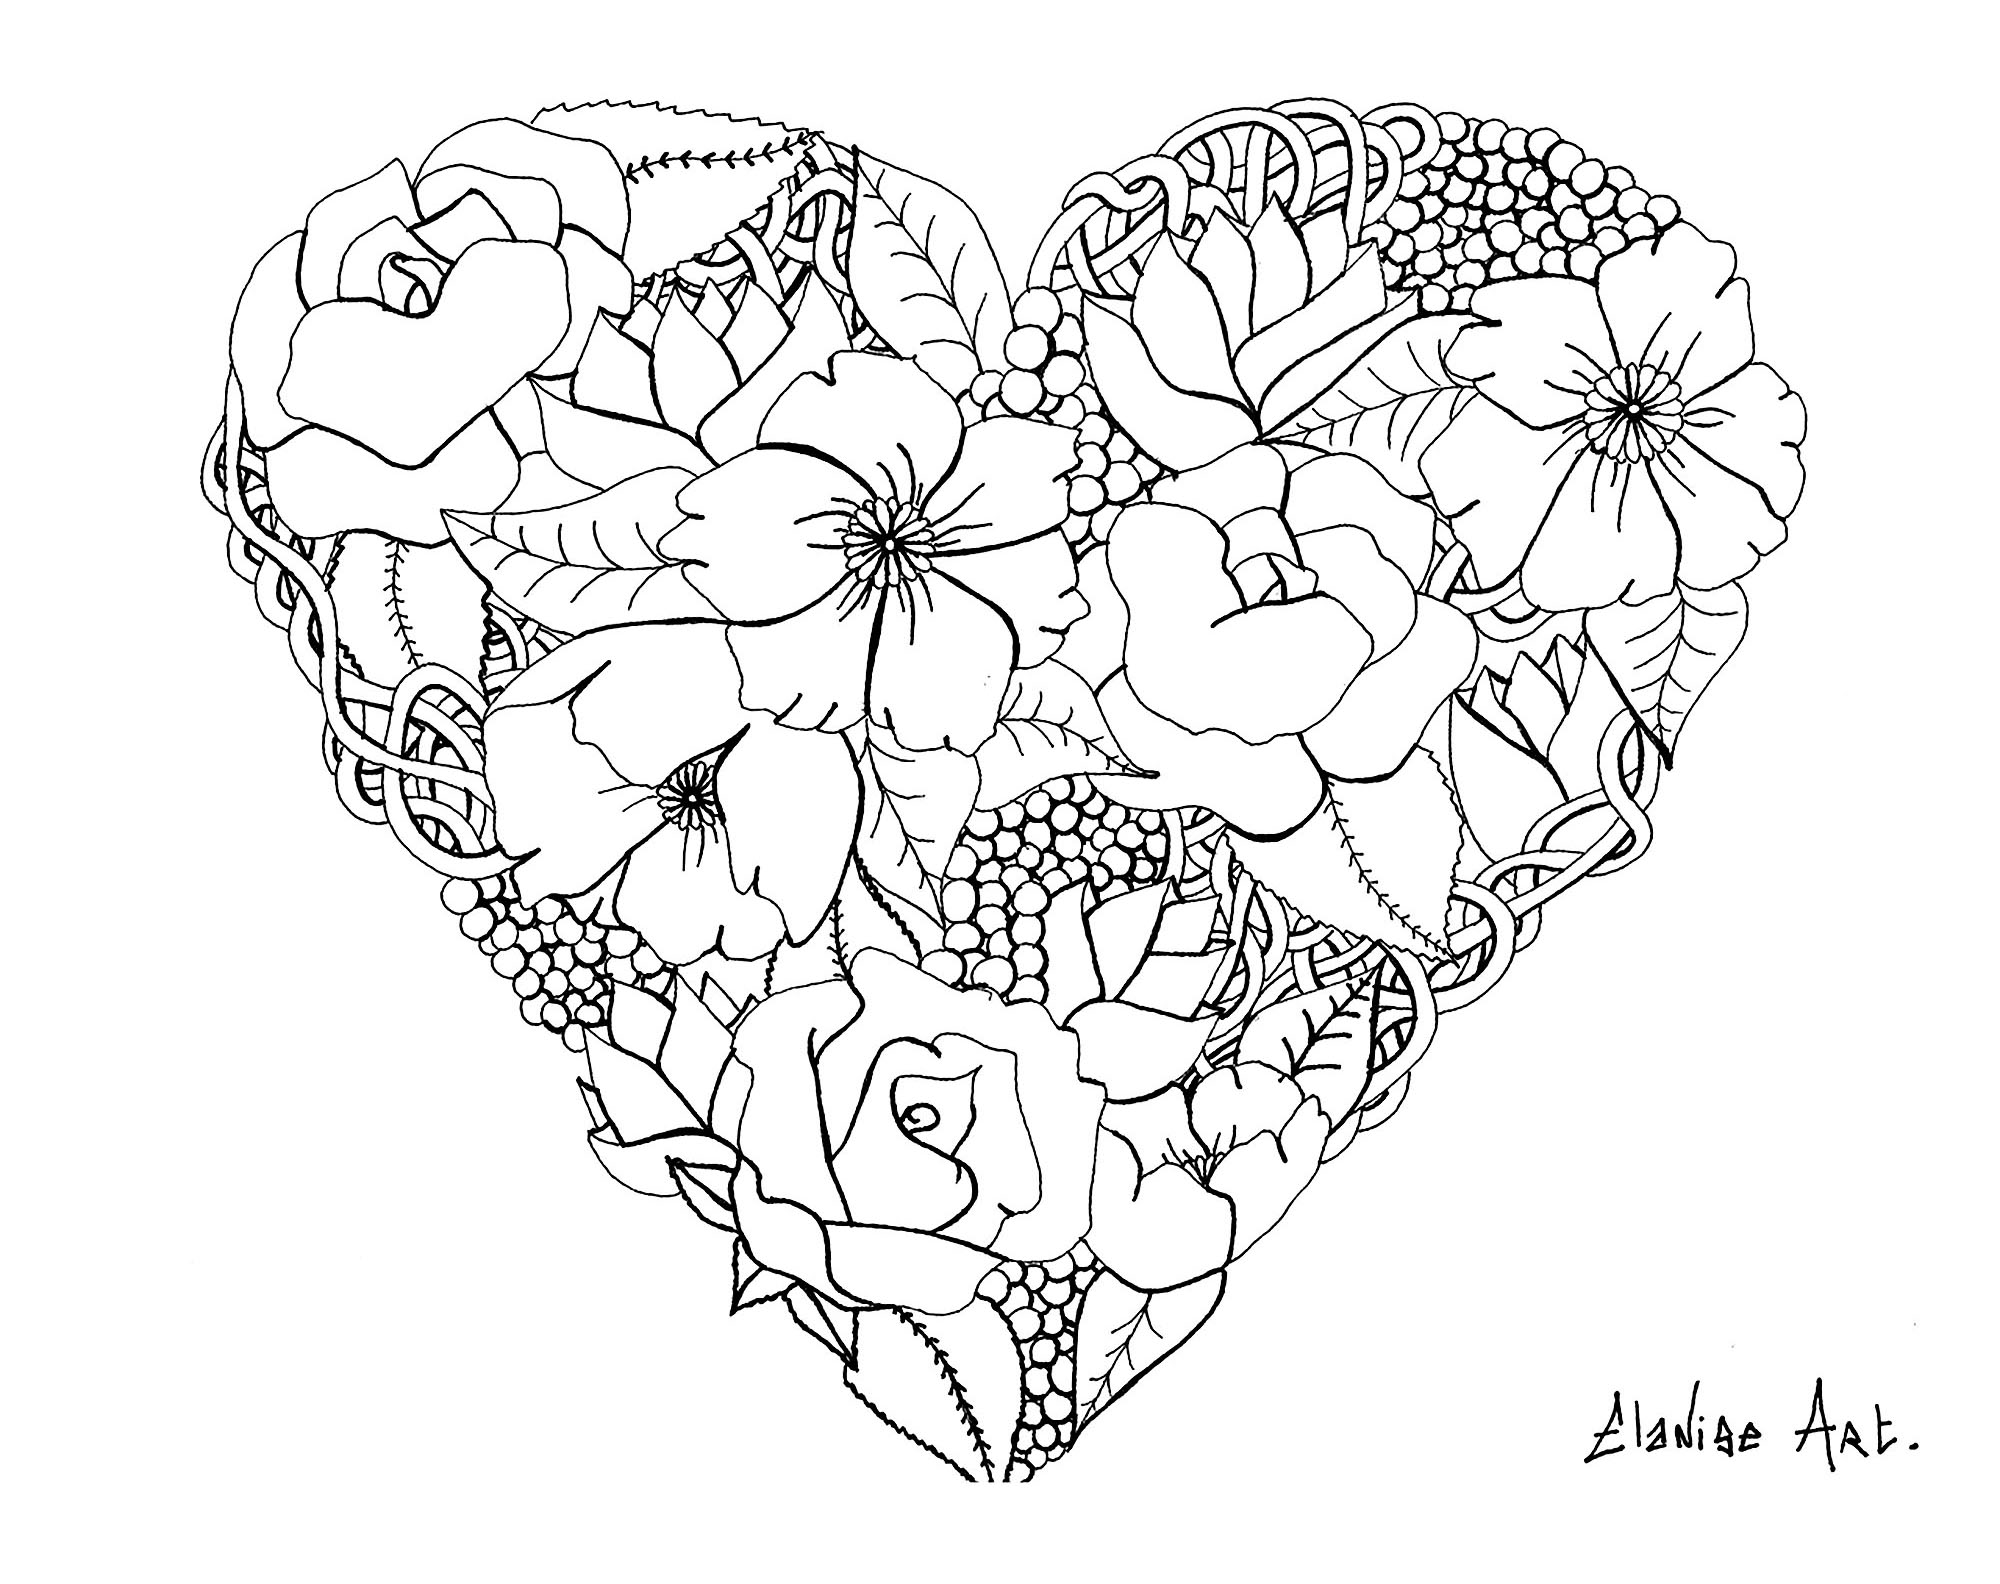 Hübsches Blumenherz von Elanise. Dies ist kein richtiges Mandala, sondern ein Ausmalbild, das aus einem Herz mit realistischen Blumen besteht.